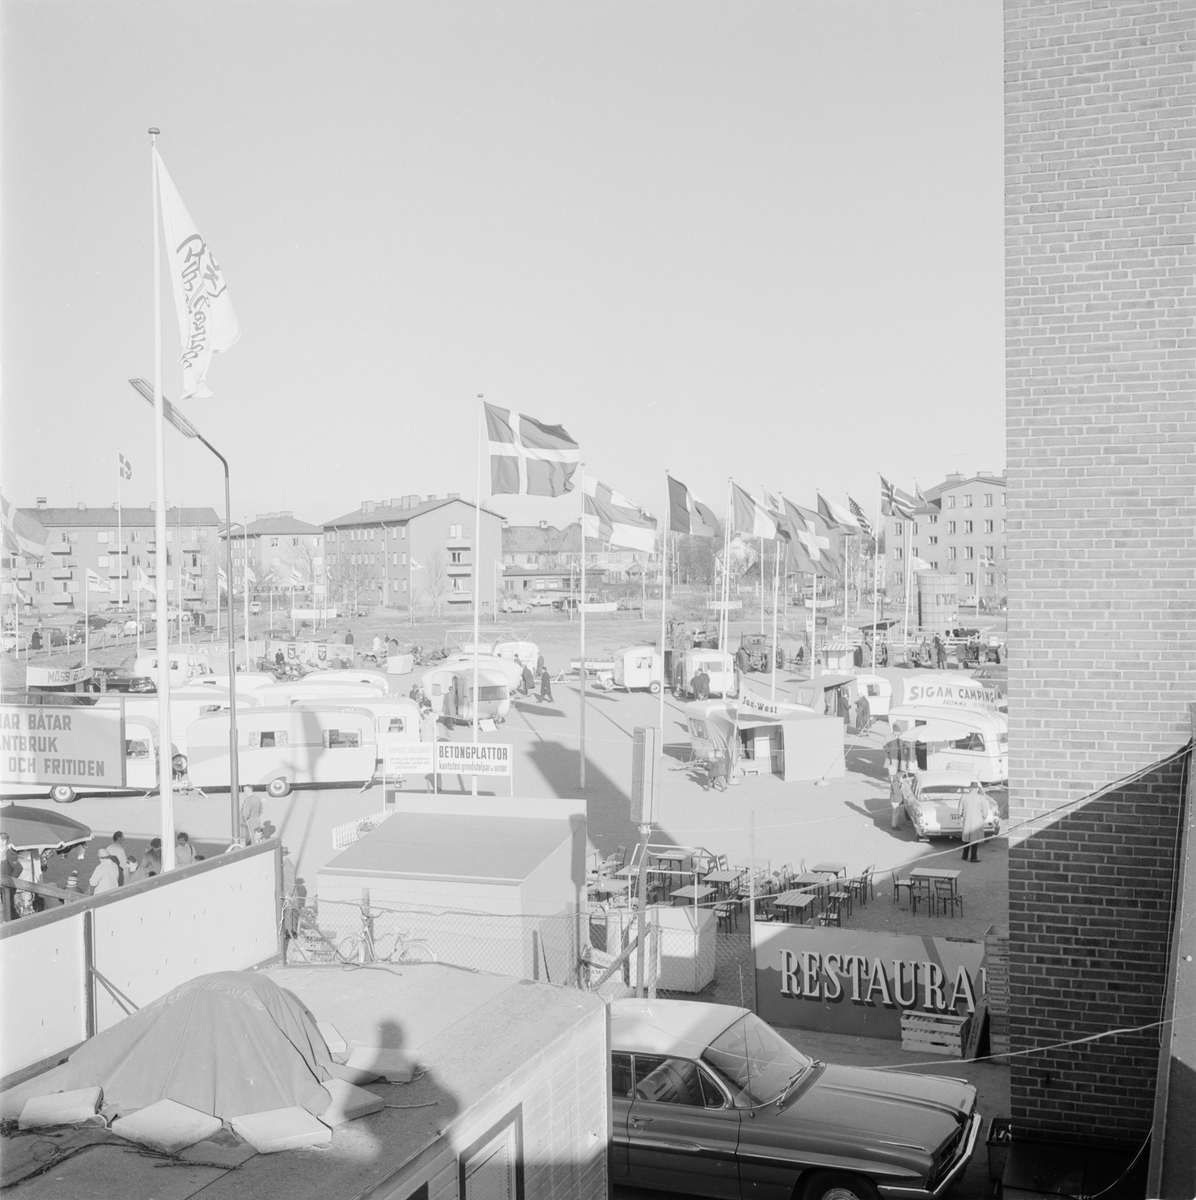 Hushållningssällskapet - "Sten Sture mässan", Uppsala 1962